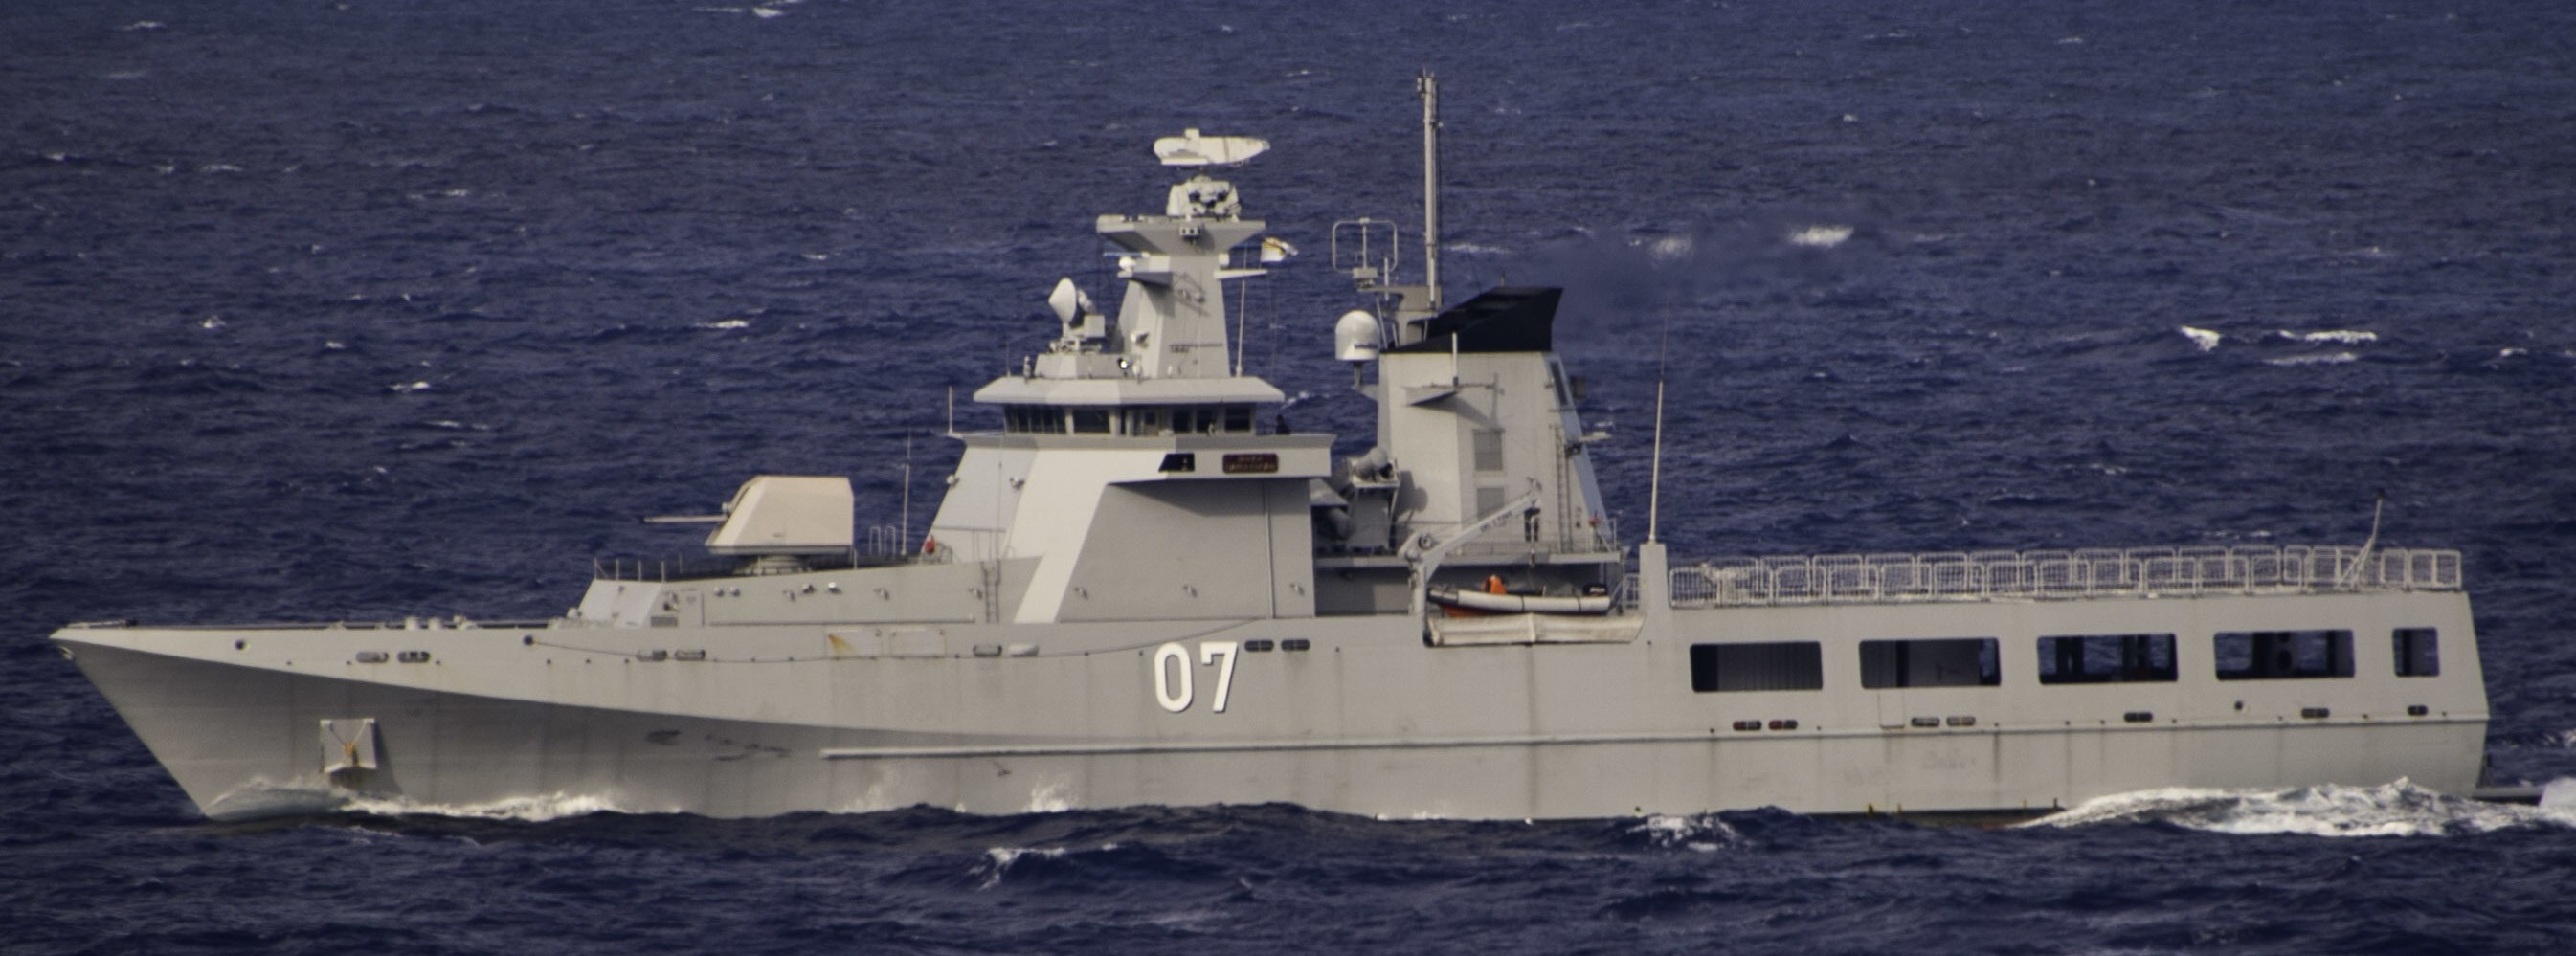 opv 07 kdb darulehsan offshore patrol vessel darussalem class royal brunei navy 04